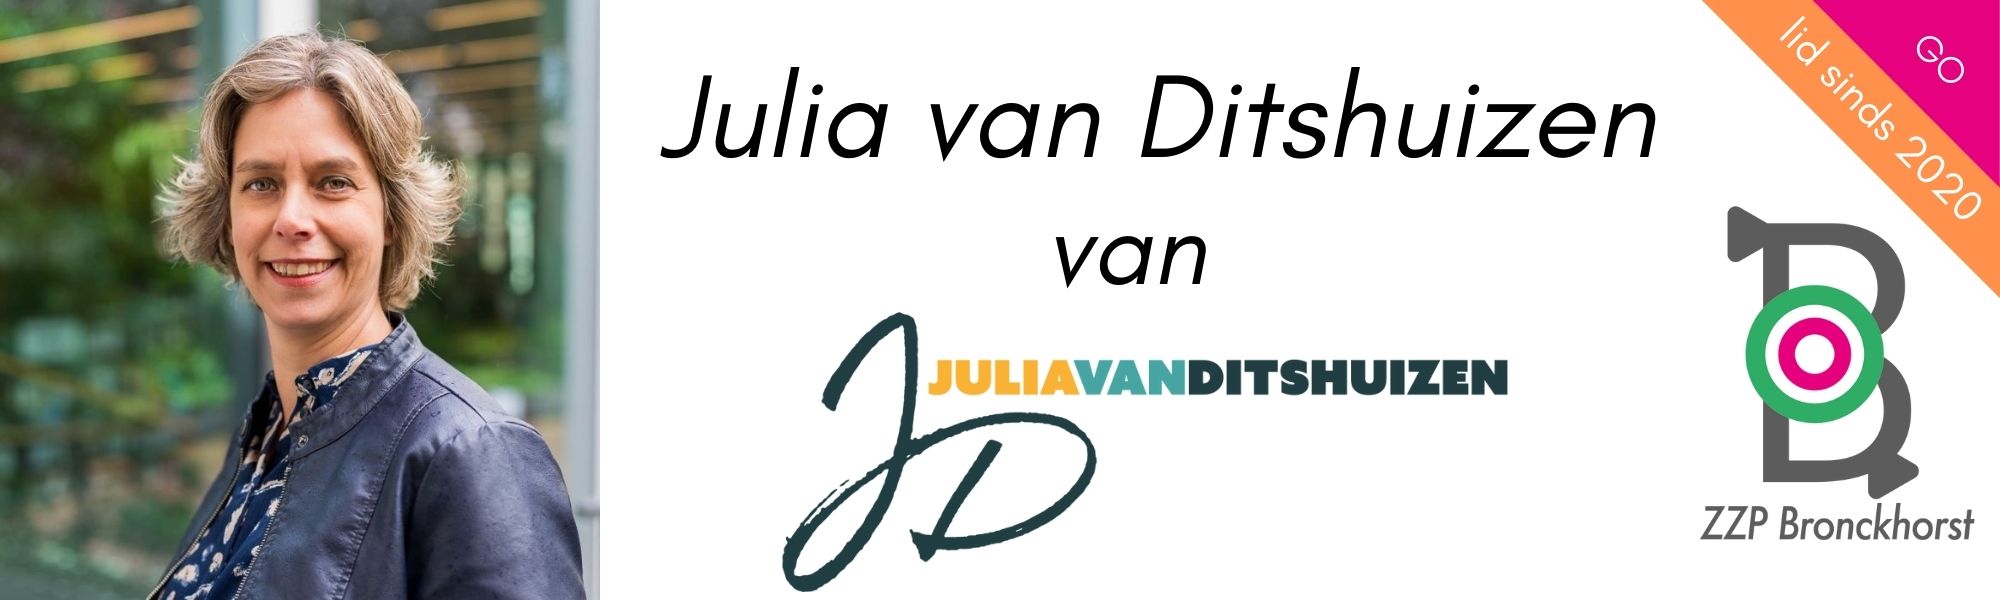 julia-van-ditshuizen-financieel-coach-bronckhorst-zzpbronckhorst